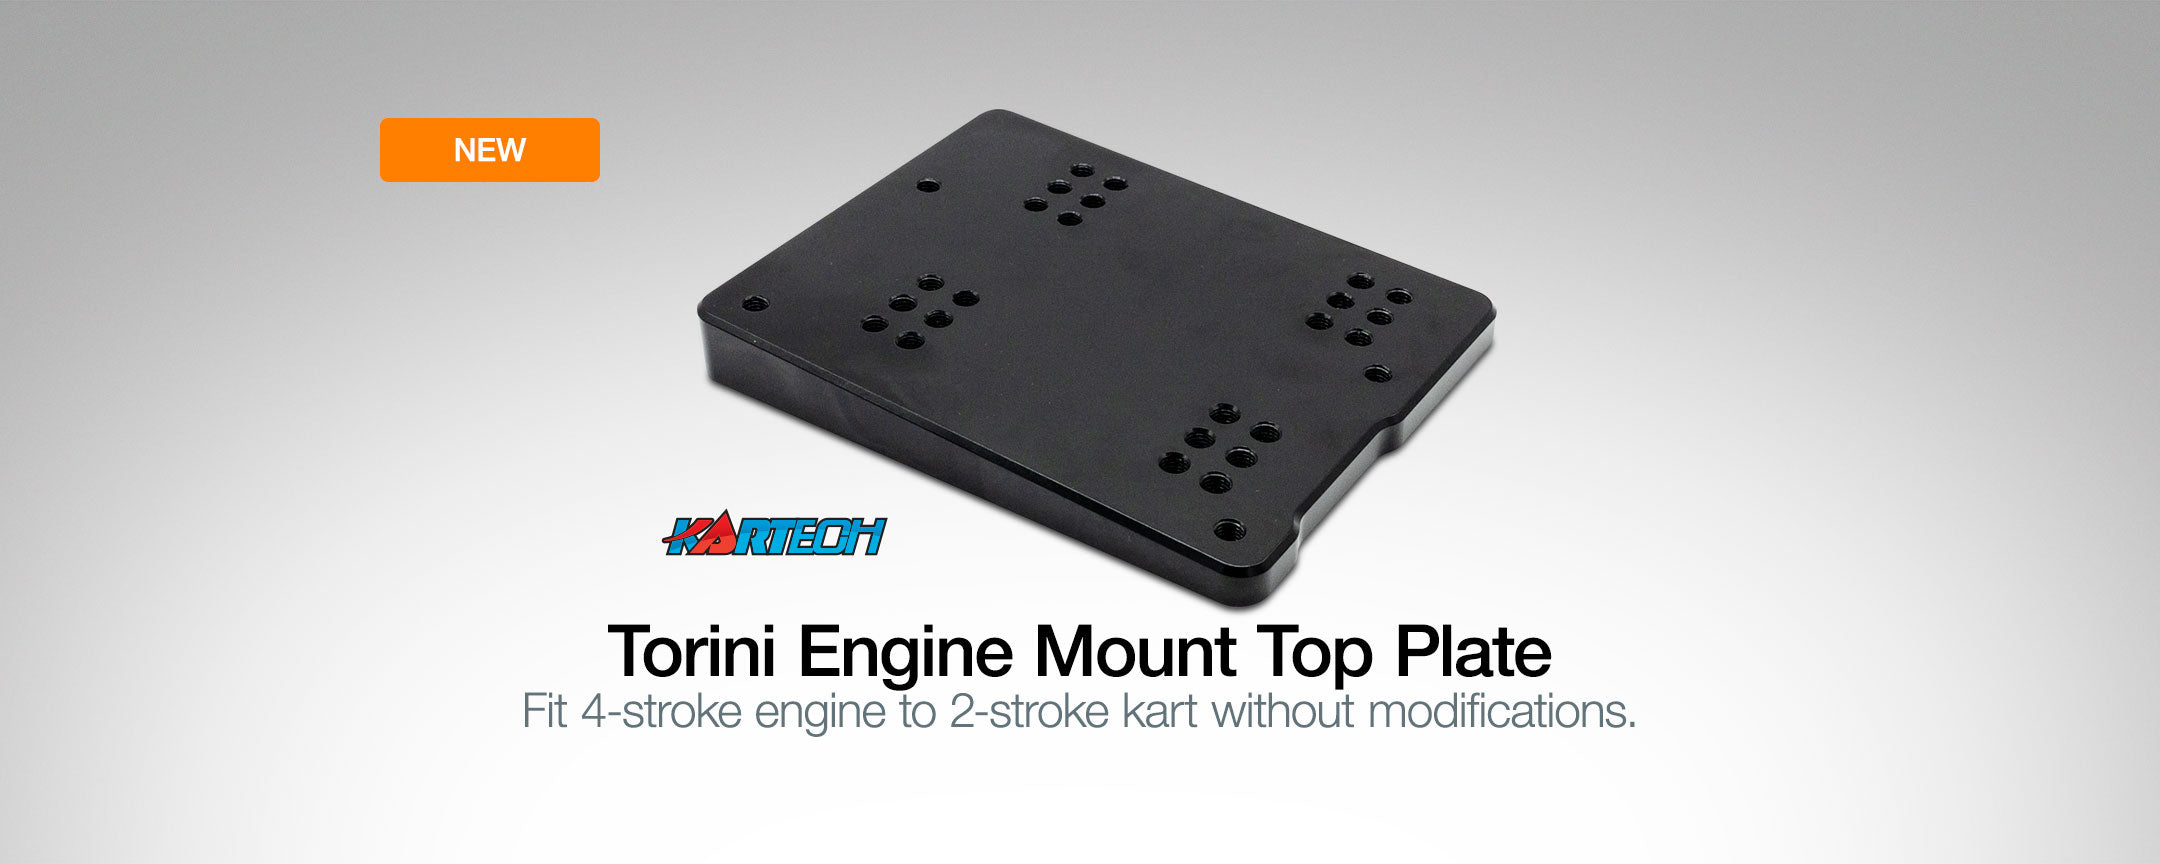 Go Kart Engine Mount for 4-stroke engine | Torini Engine Mount | Kart Racing Engine Mount